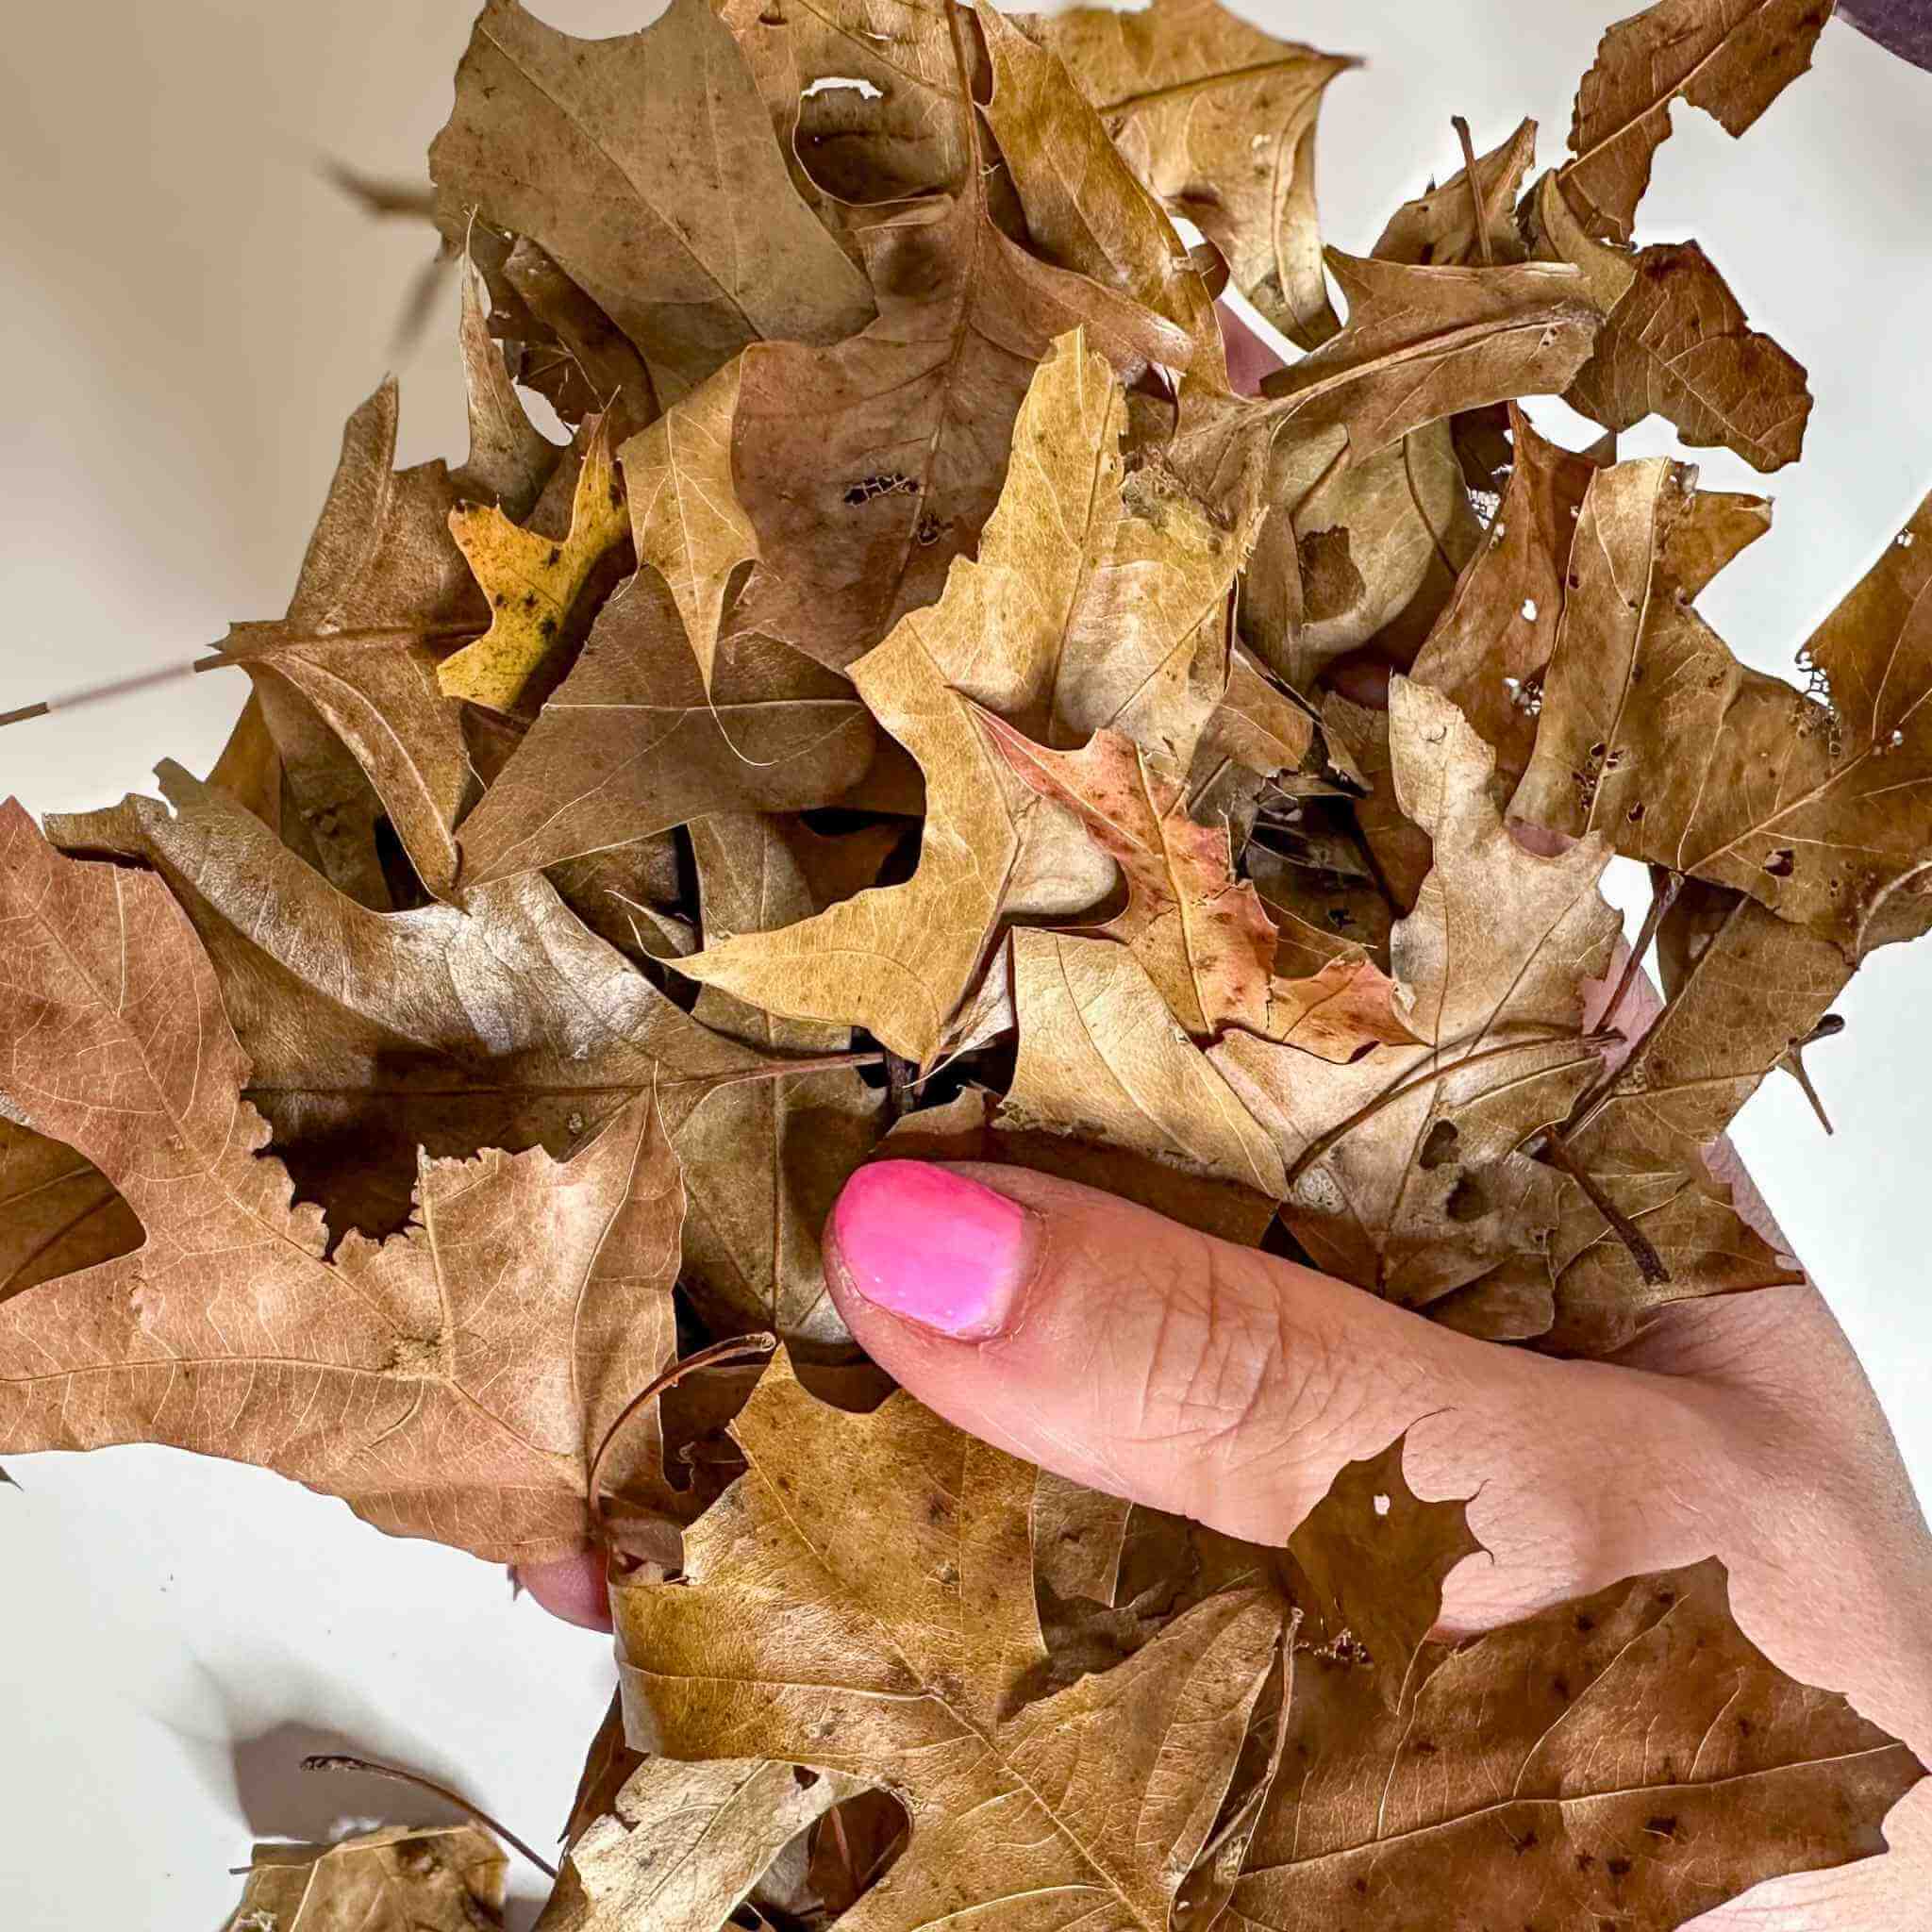 oak leaf litter in hand